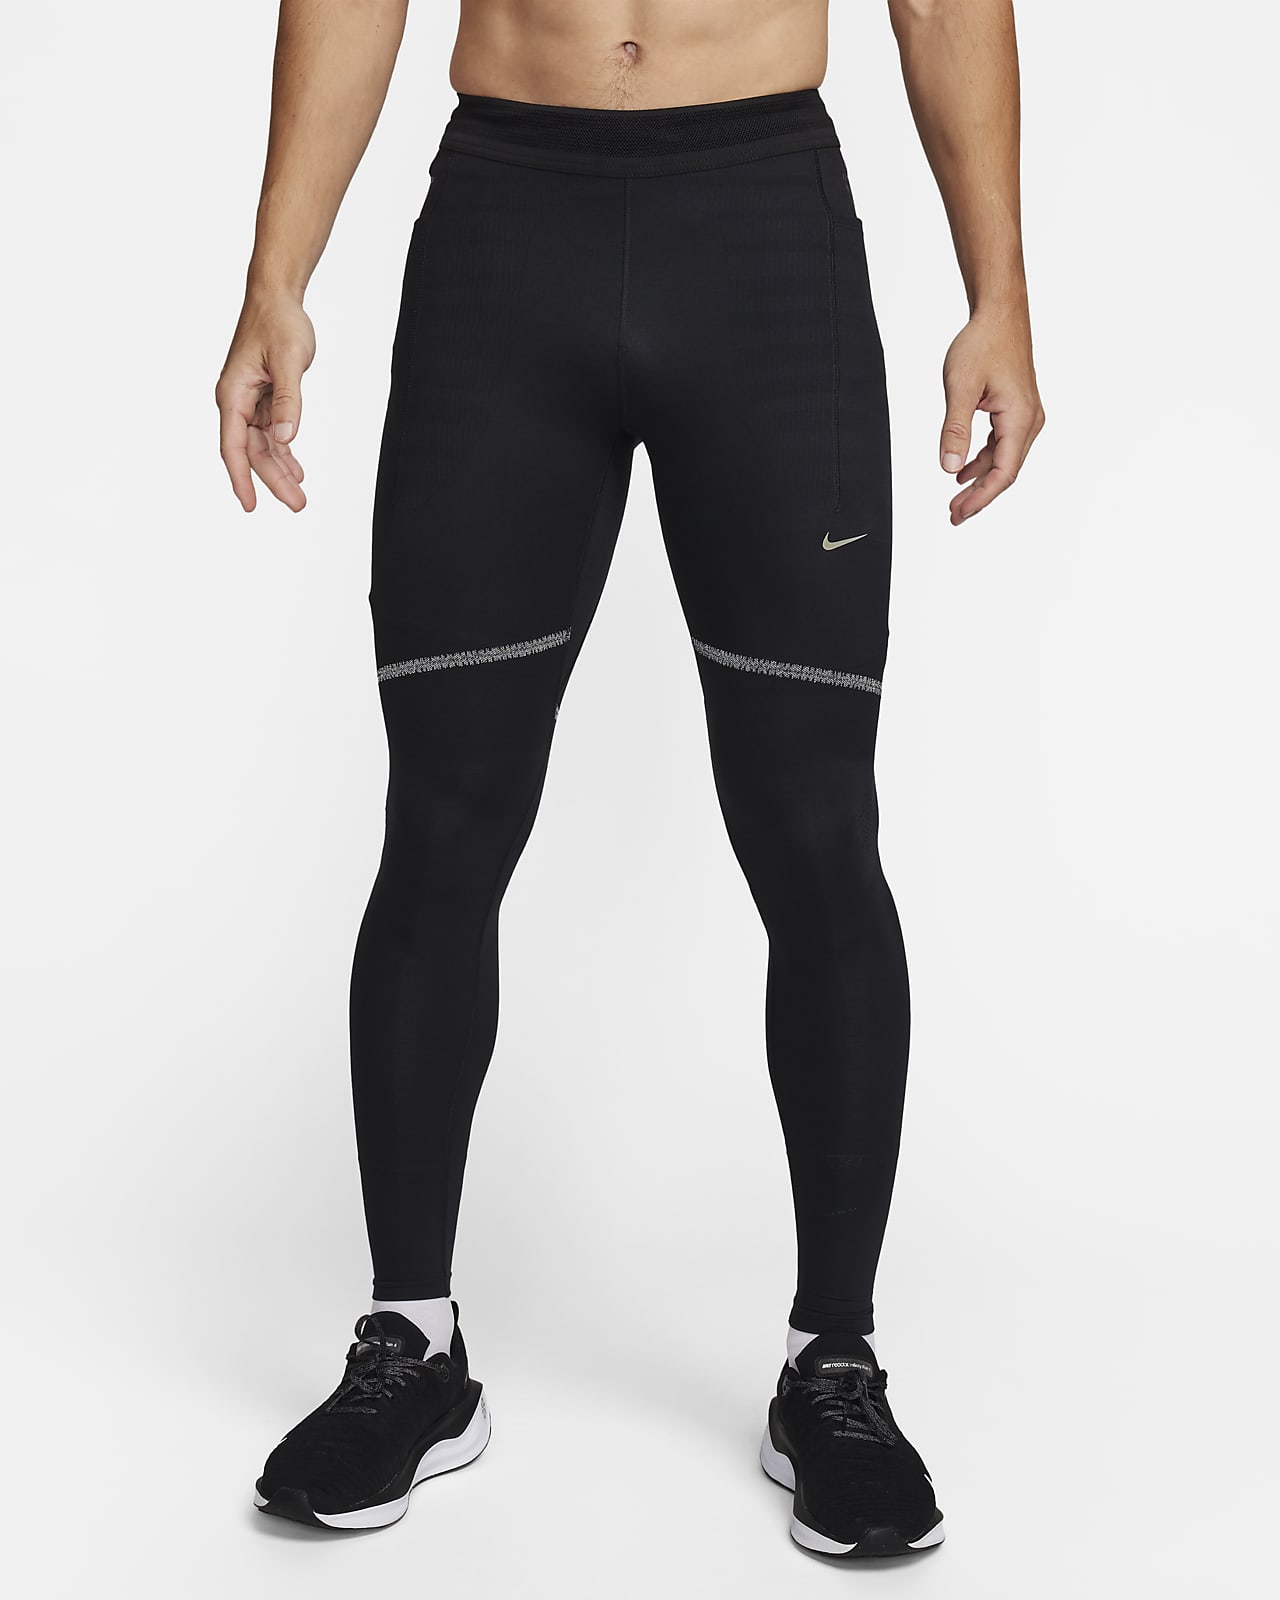 Leggings & Tights. Nike CA